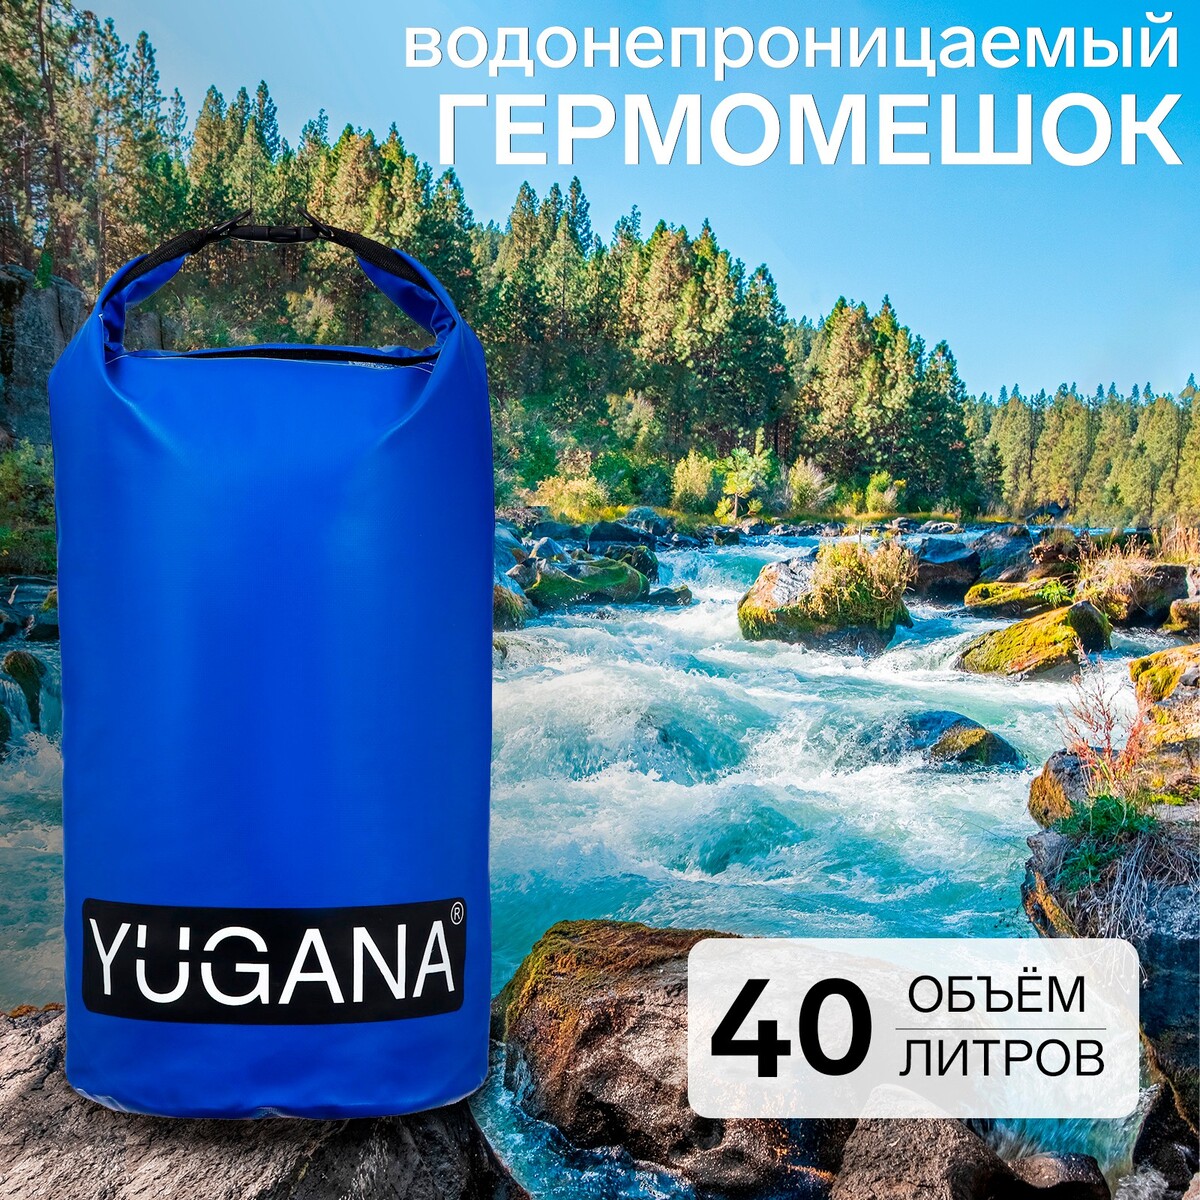 Гермомешок yugana, пвх, водонепроницаемый 40 литров, два ремня, синий комплект из блока и ремня для йоги star fit yb 205 синий пастель